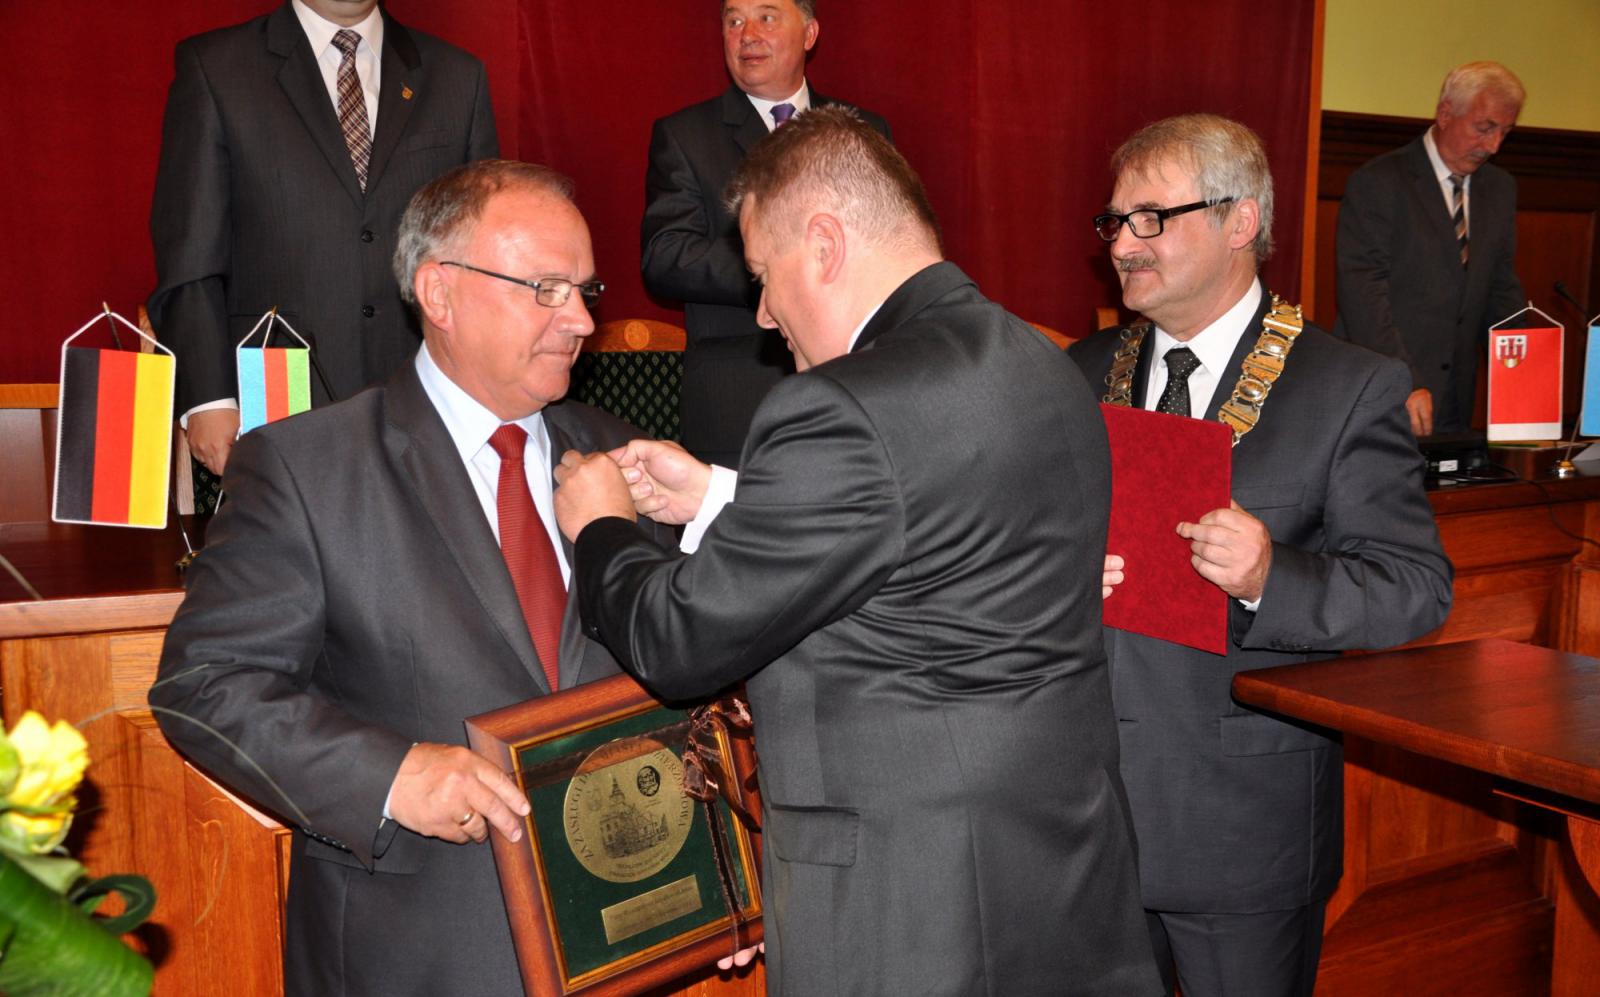 Wręczenie medalu za zasługi Ryszardowi Szydłowskiemu